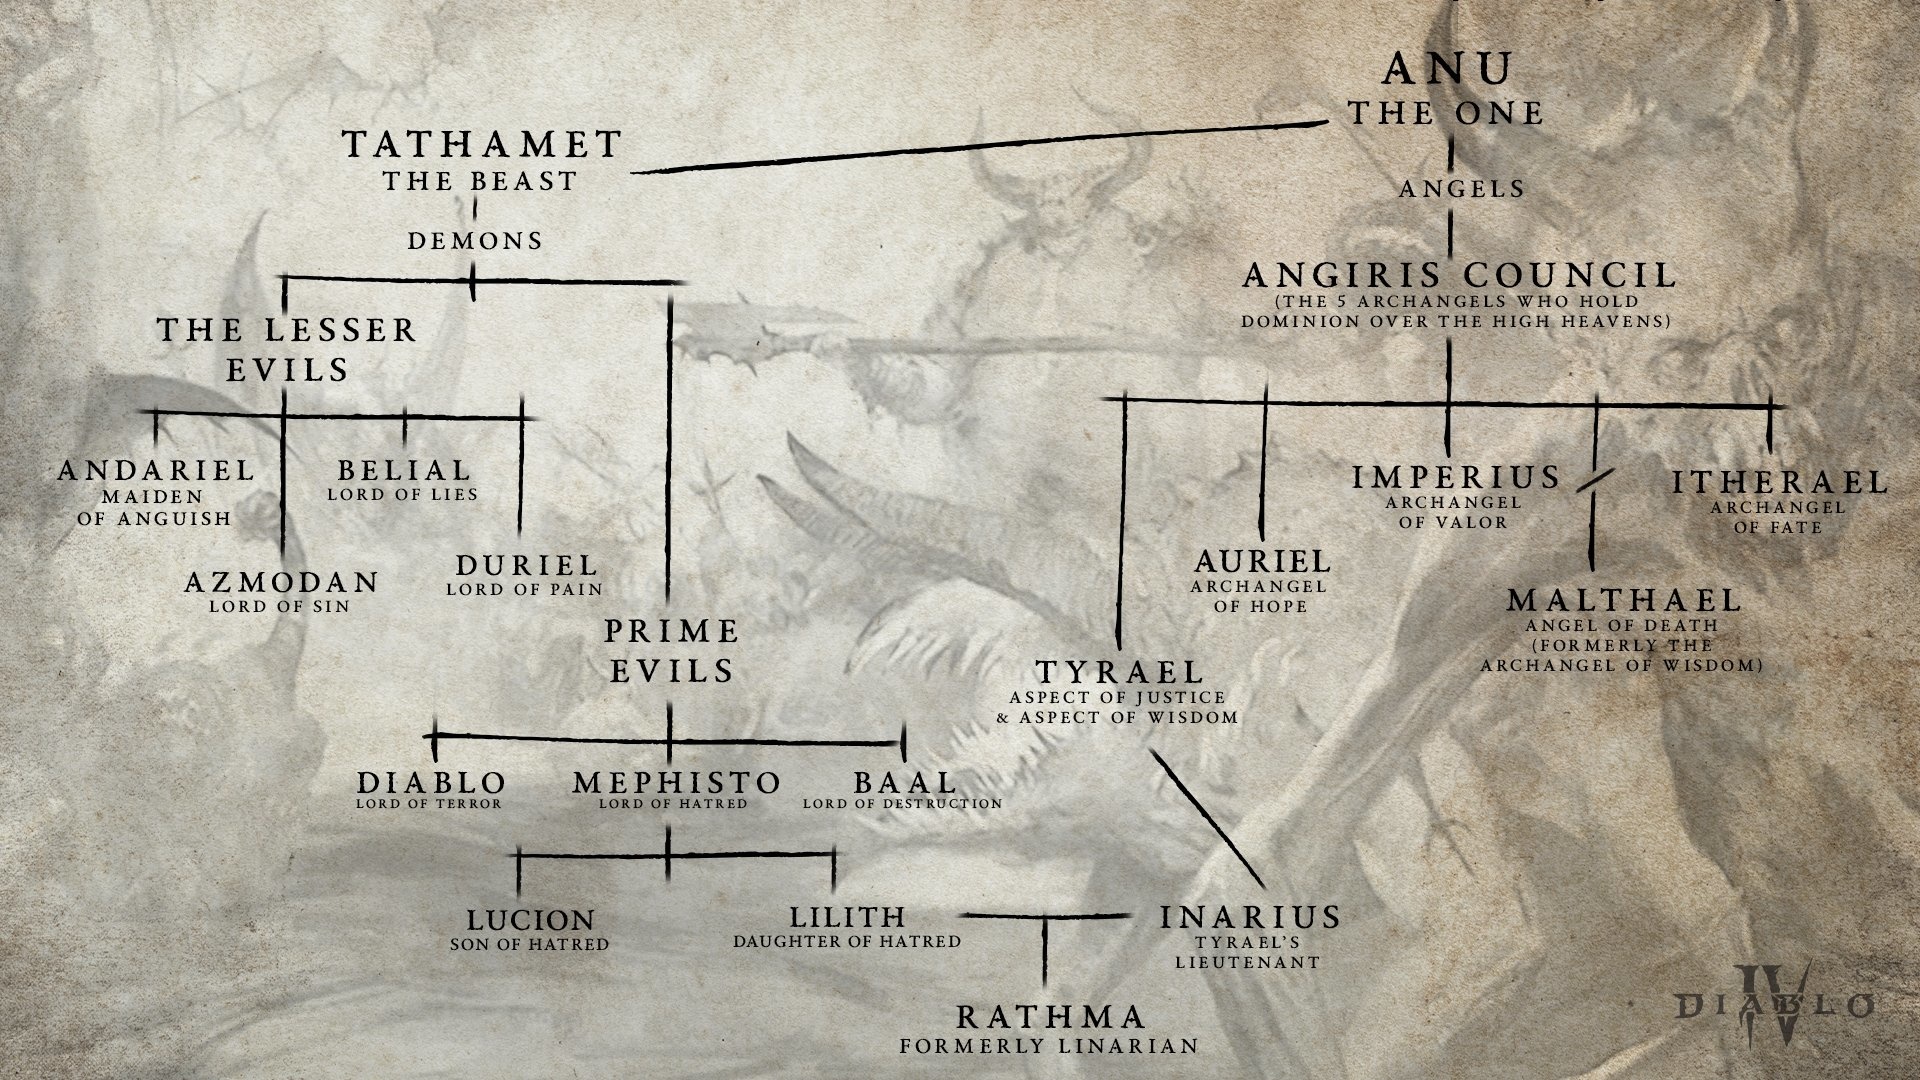 (começando com o primeiro sendo Anu, a árvore genealógica mostra os anjos e demónios até ao filho de Lilith e Inarius.)